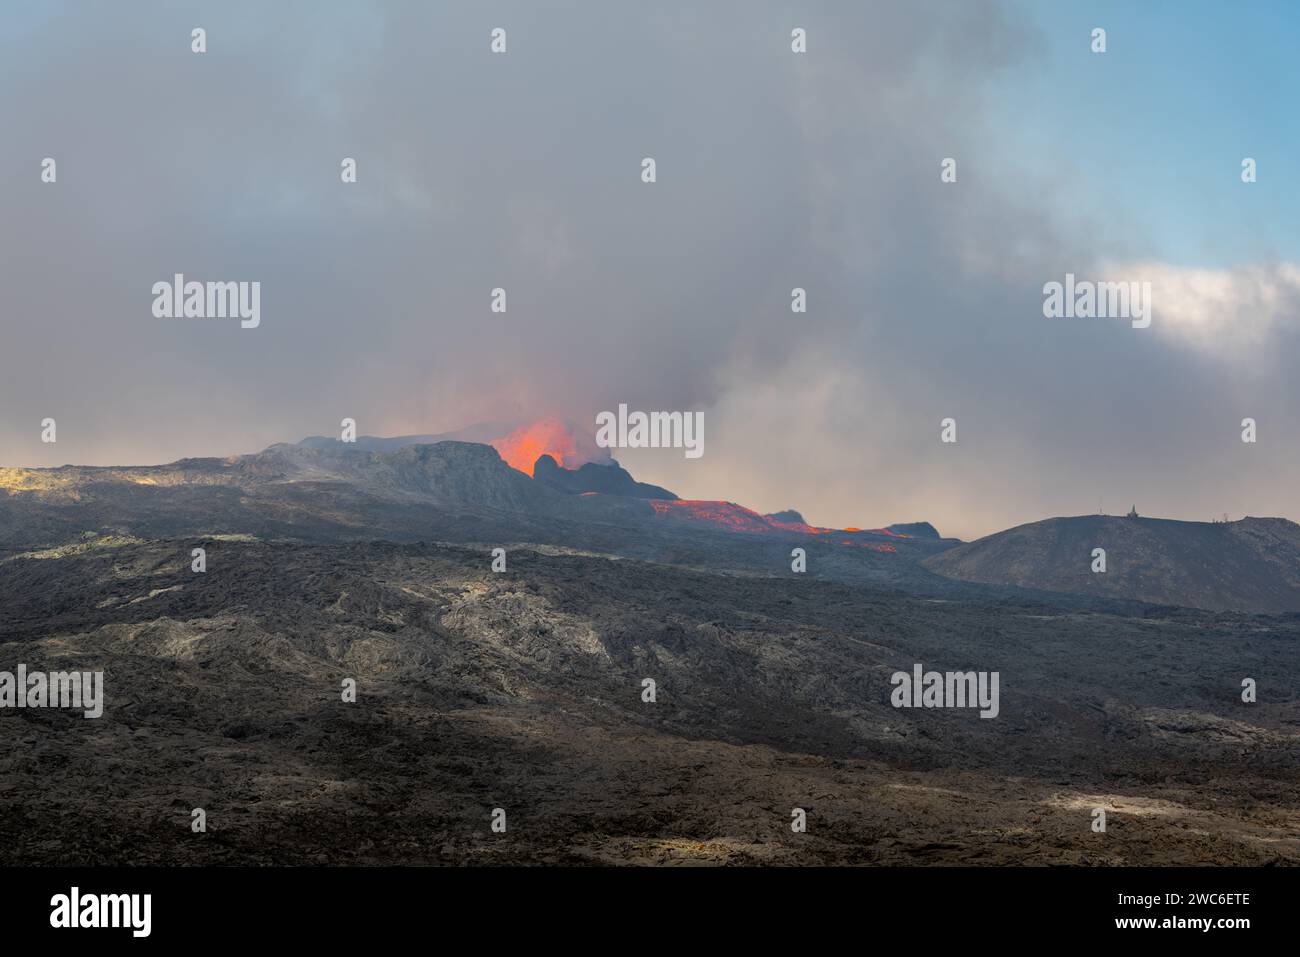 Blick über ein gehärtetes schwarzgraues Lavafeld. Durch schimmernde heiße Luft brechen Lava und Rauch aus einem Vulkan in der Ferne aus. Stockfoto